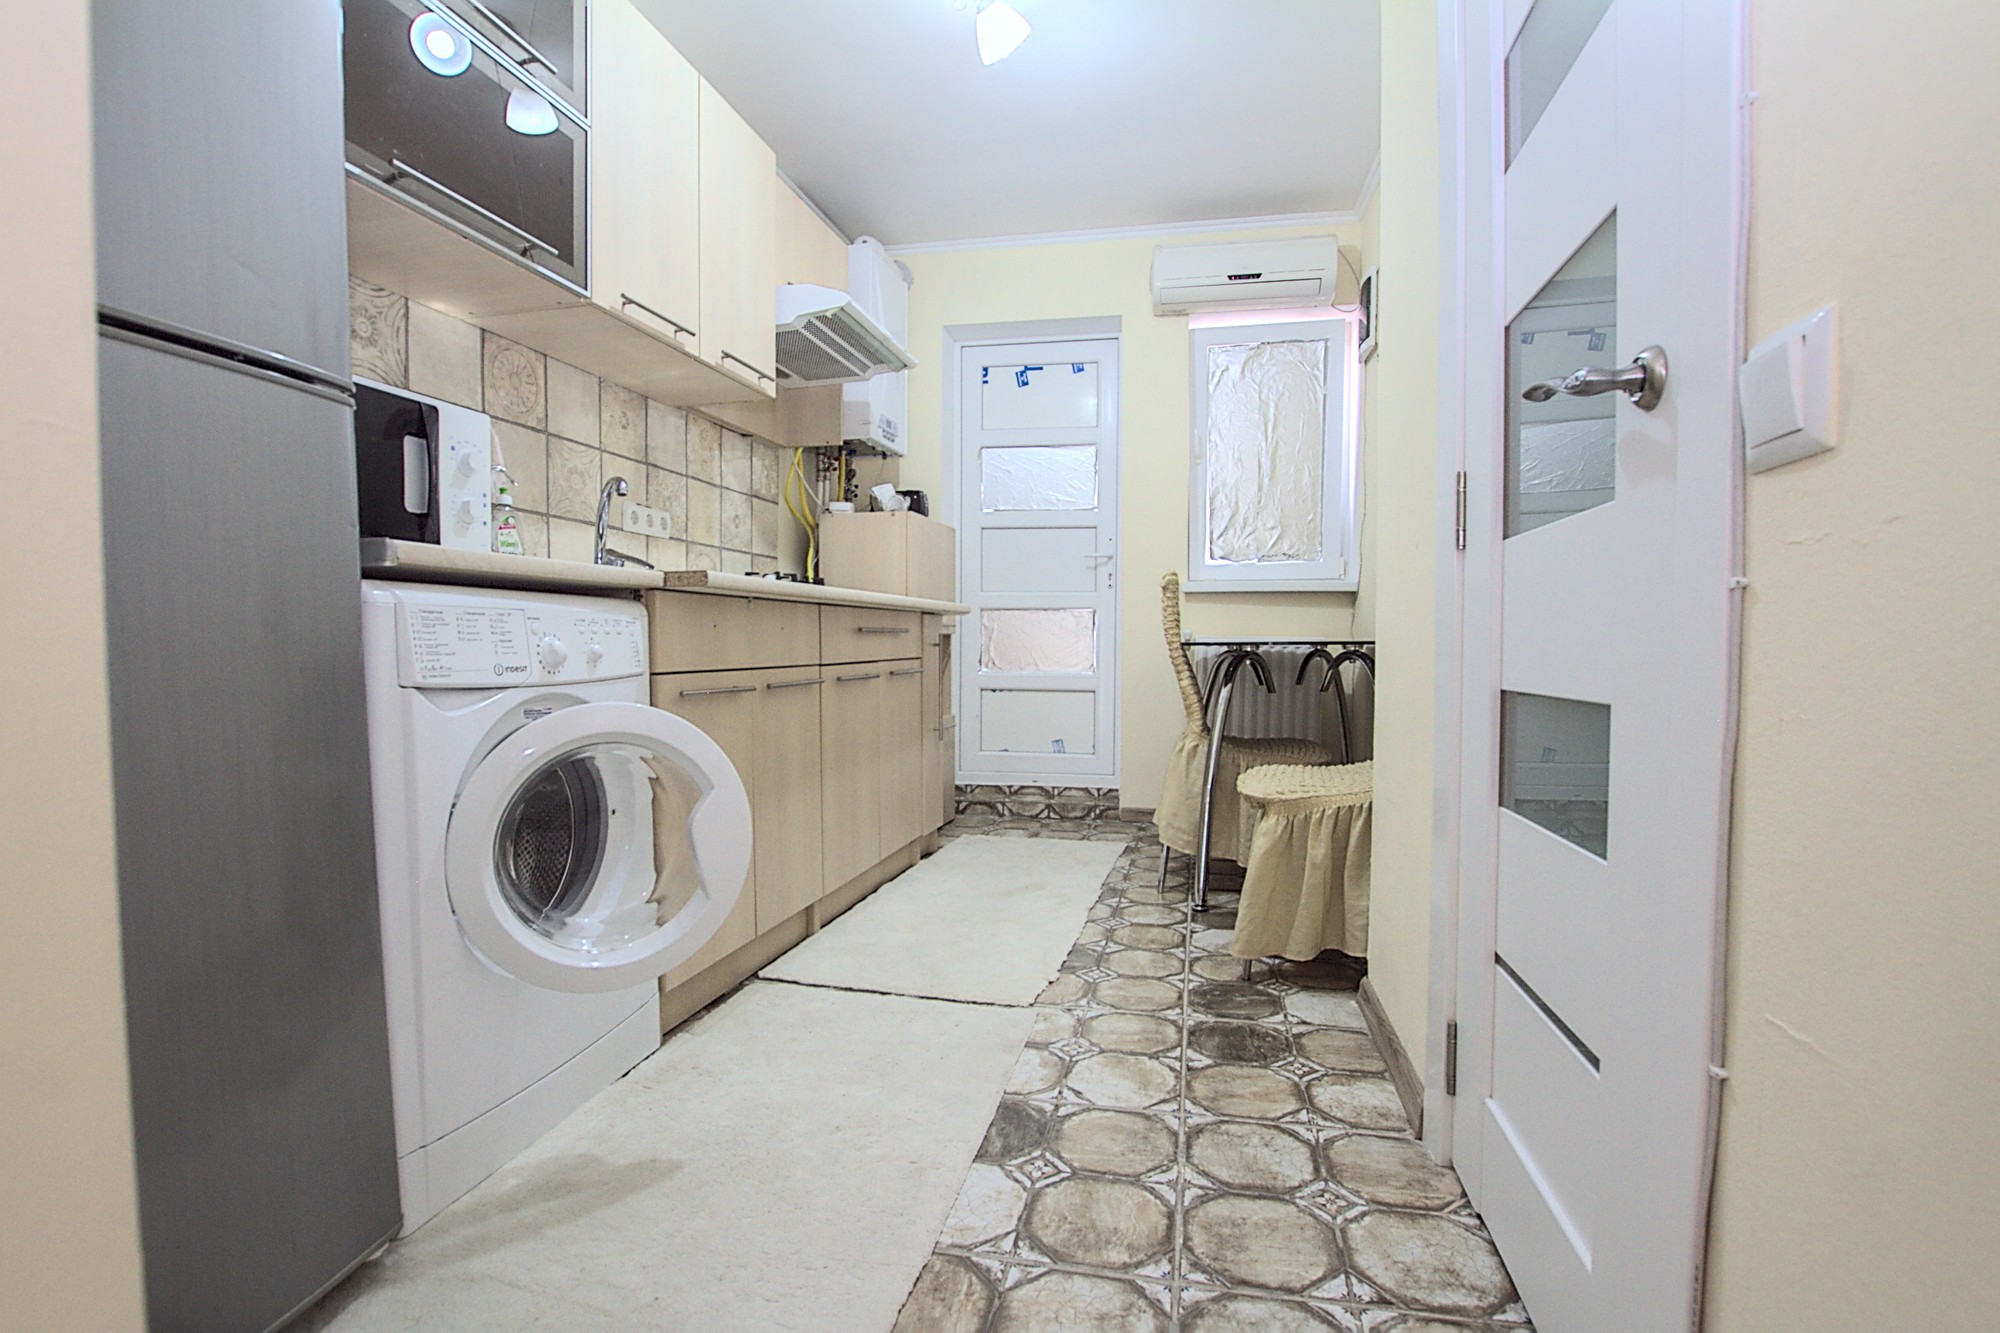 Petty & Pretty Dwelling ist ein 1 Zimmer Apartment zur Miete in Chisinau, Moldova